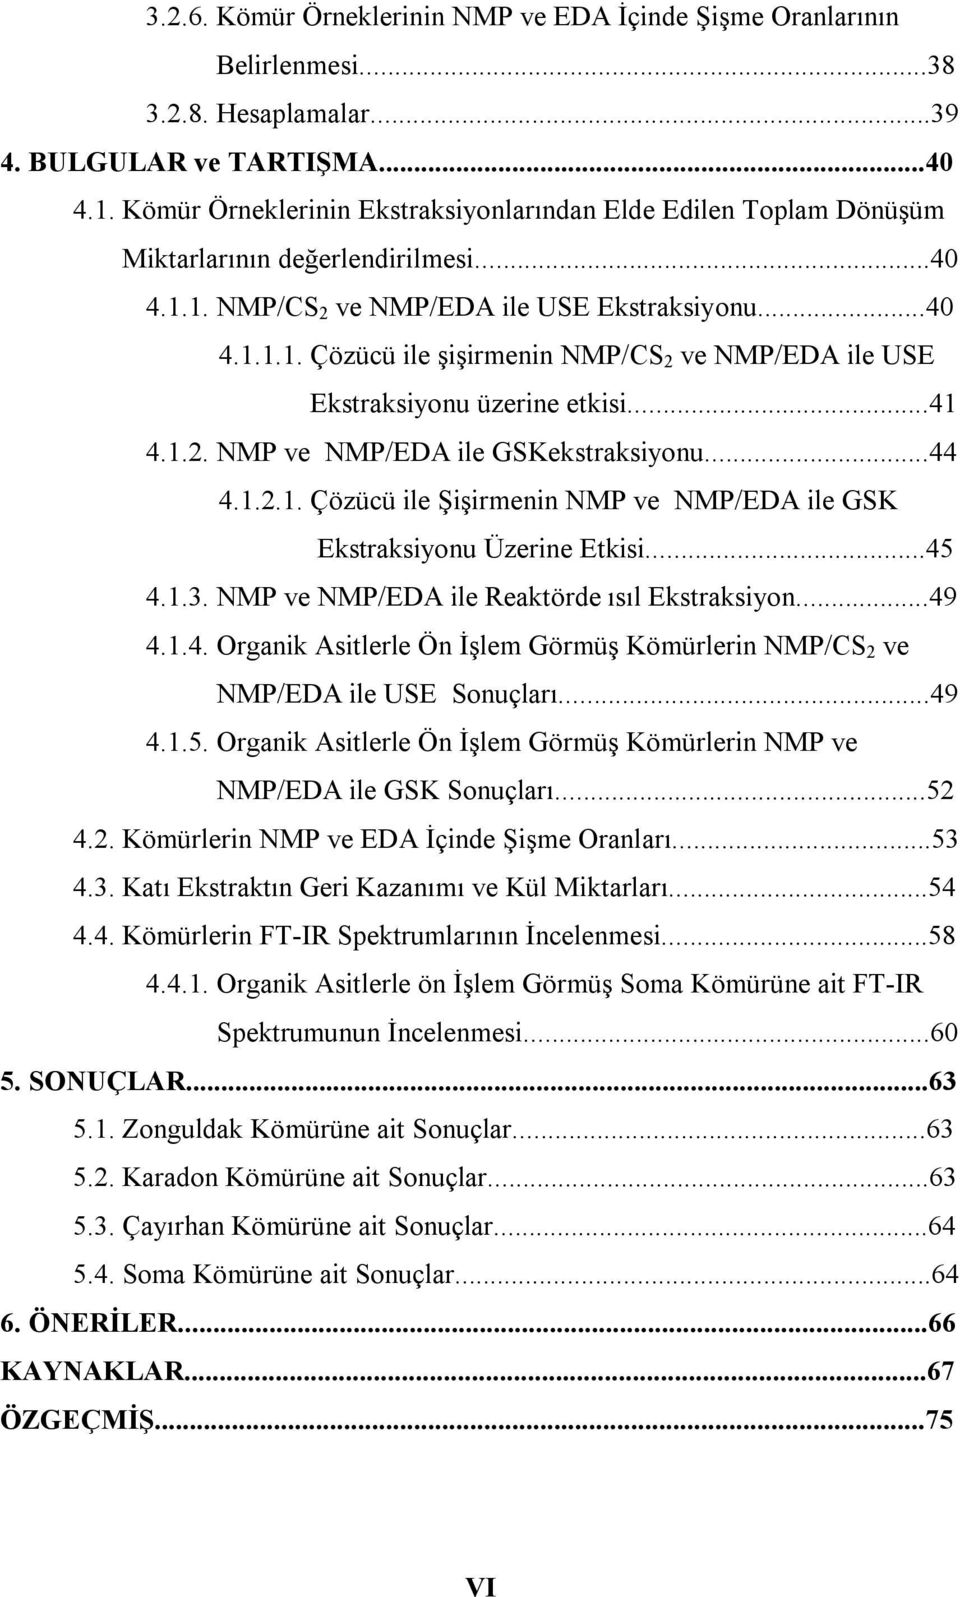 ..41 4.1.2. NMP ve NMP/ED ile GSKekstrksiyonu...44 4.1.2.1. Çözüü ile Şişirmenin NMP ve NMP/ED ile GSK Ekstrksiyonu Üzerine Etkisi...45 4.1.3. NMP ve NMP/ED ile Rektörde ısıl Ekstrksiyon...49 4.1.4. Orgnik sitlerle Ön İşlem Görmüş Kömürlerin NMP/CS 2 ve NMP/ED ile USE Sonuçlrı.